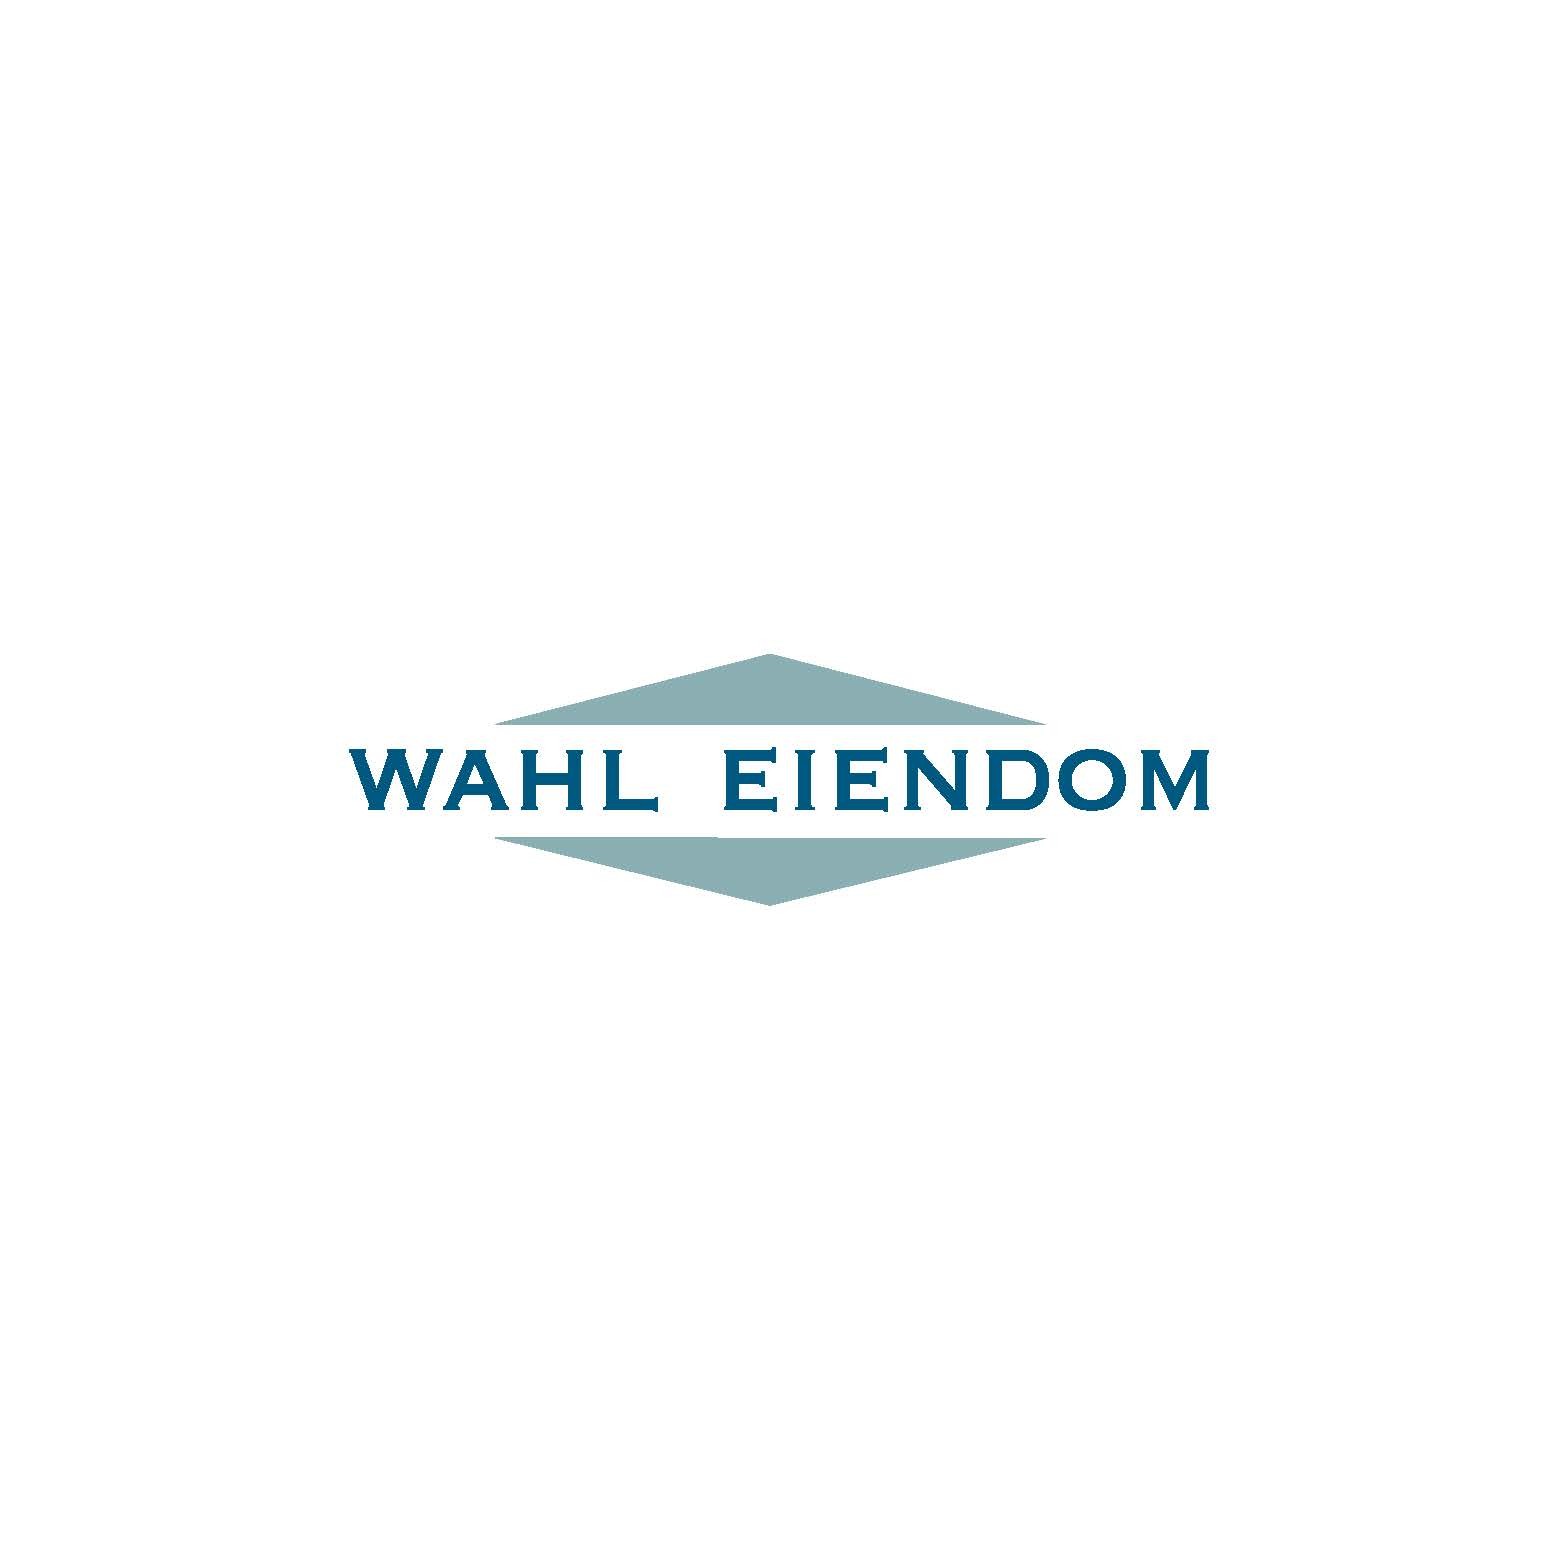 wahl_eiendom_logo_v2